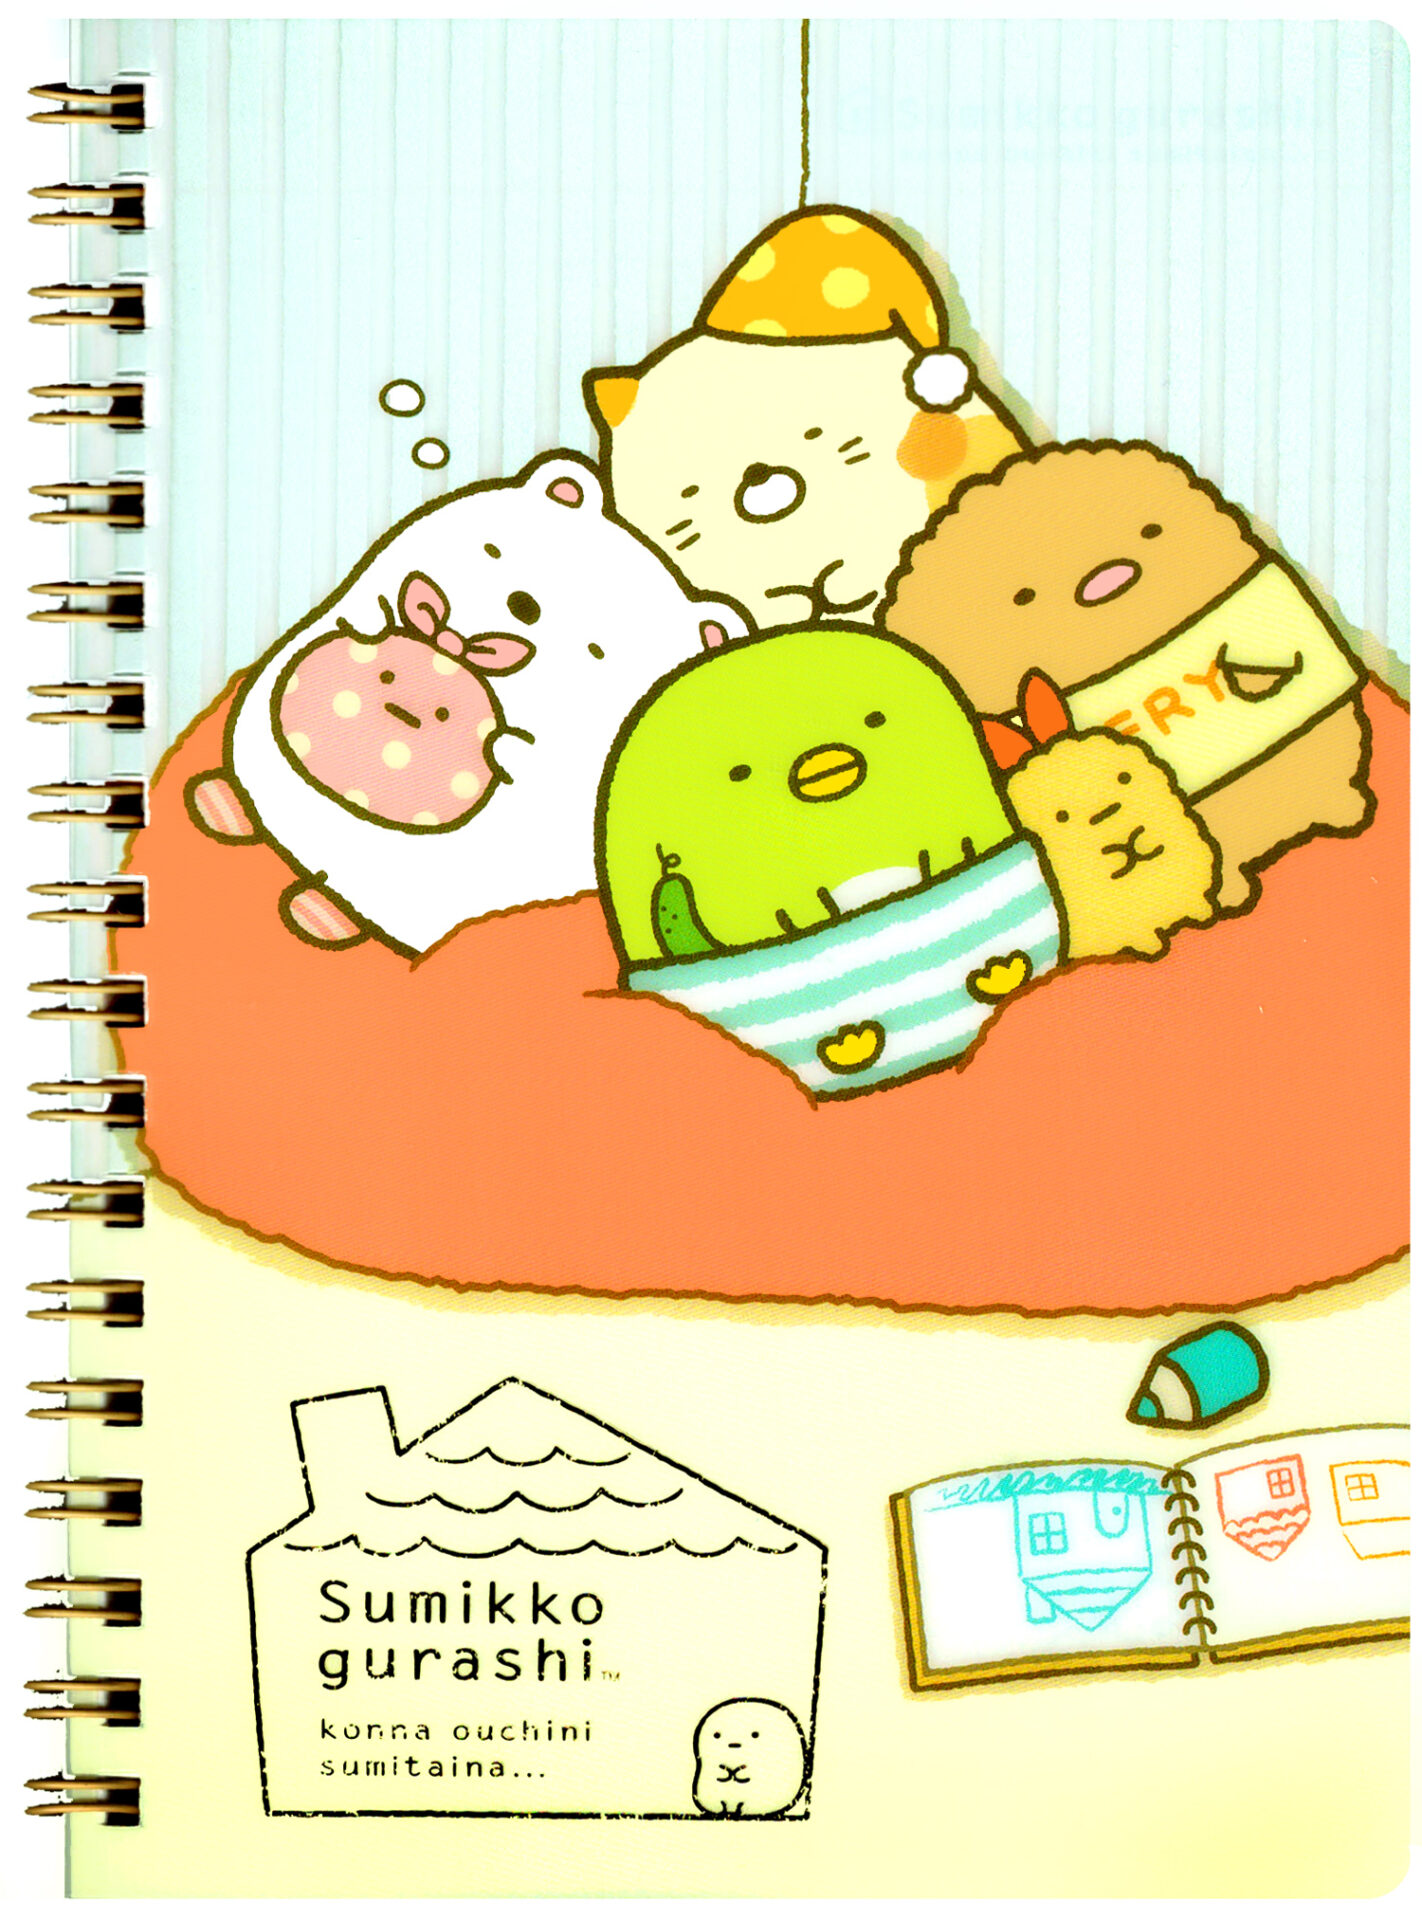 San-x Sumikko Gurashi Home B6 Spiral Notebook